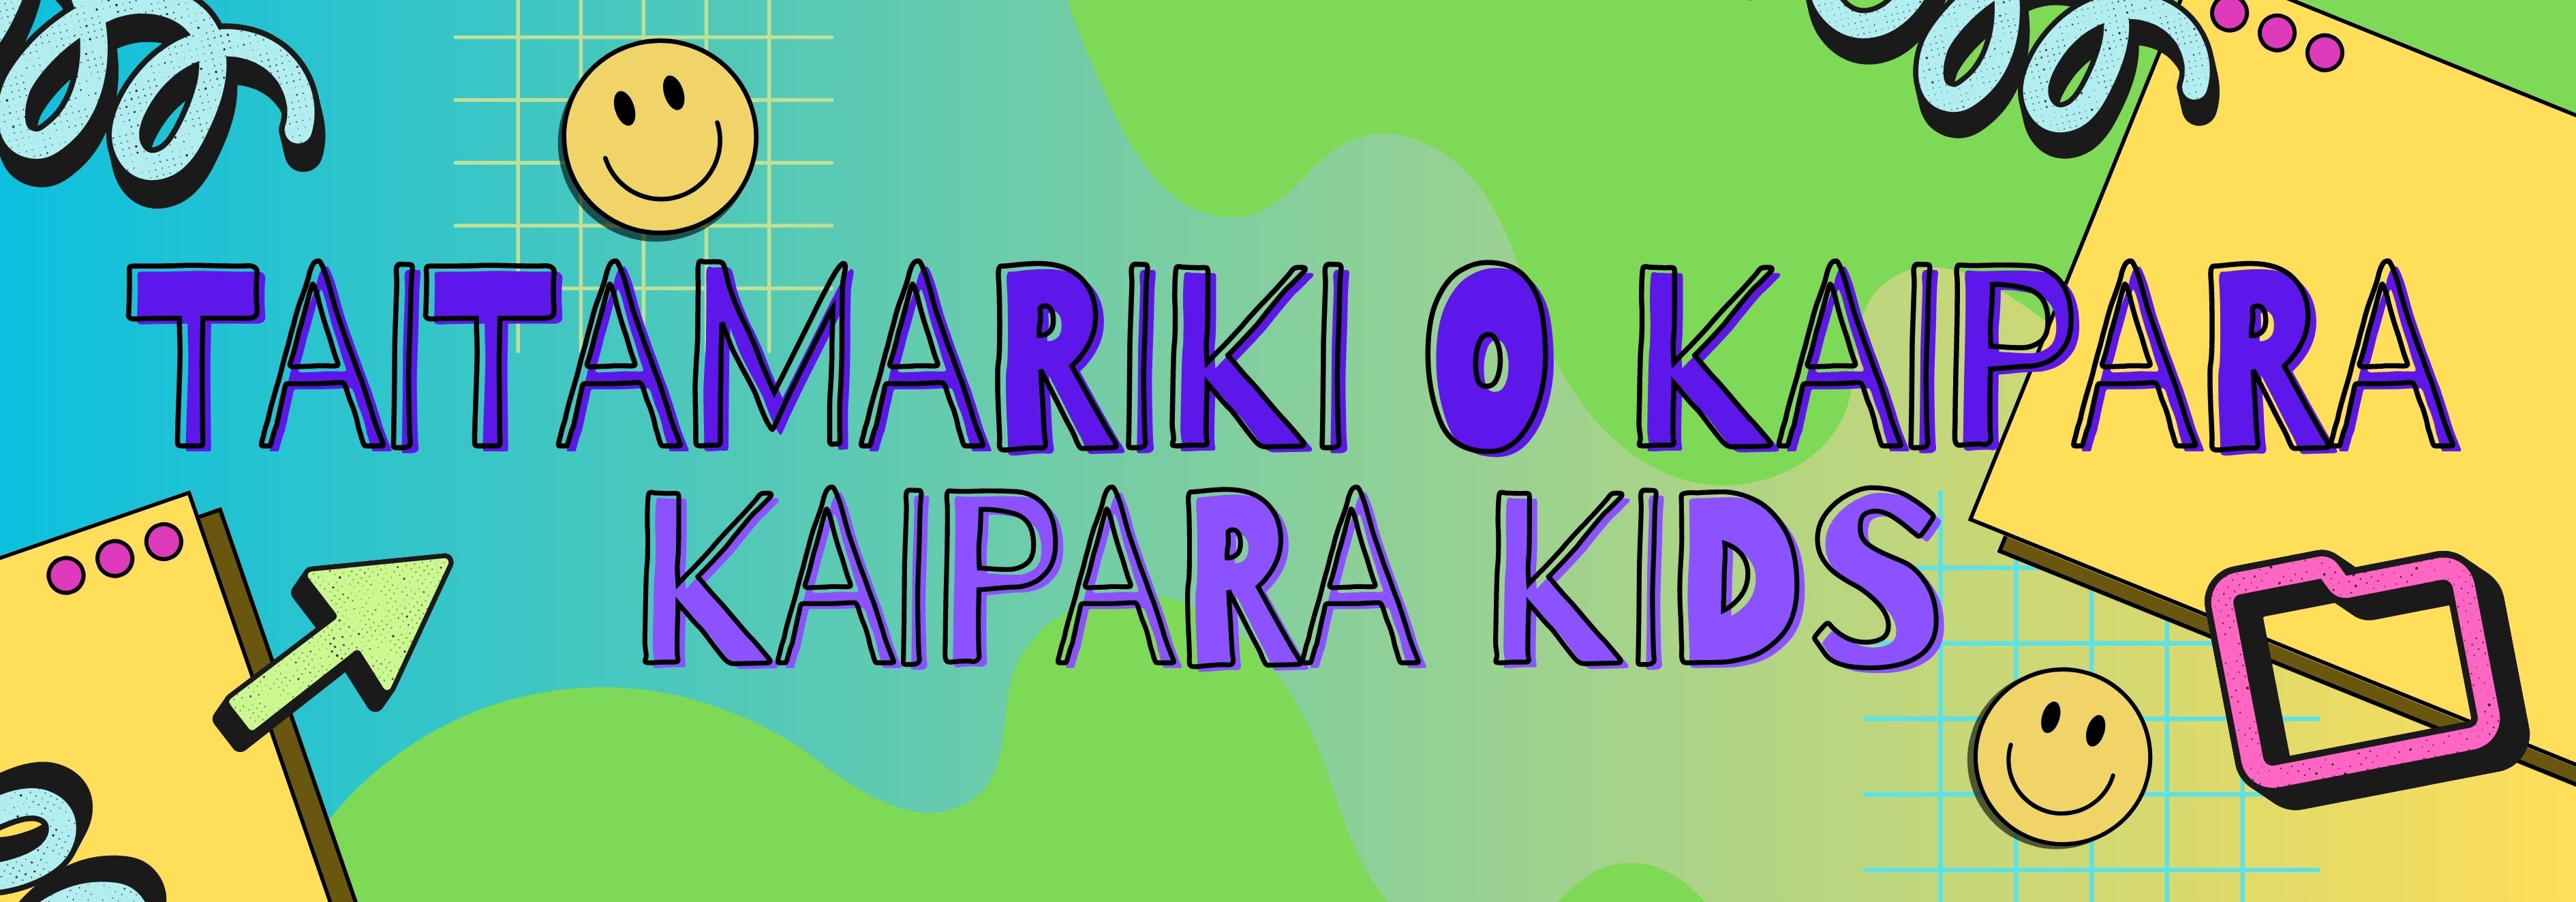 Kaipara Kids Banner